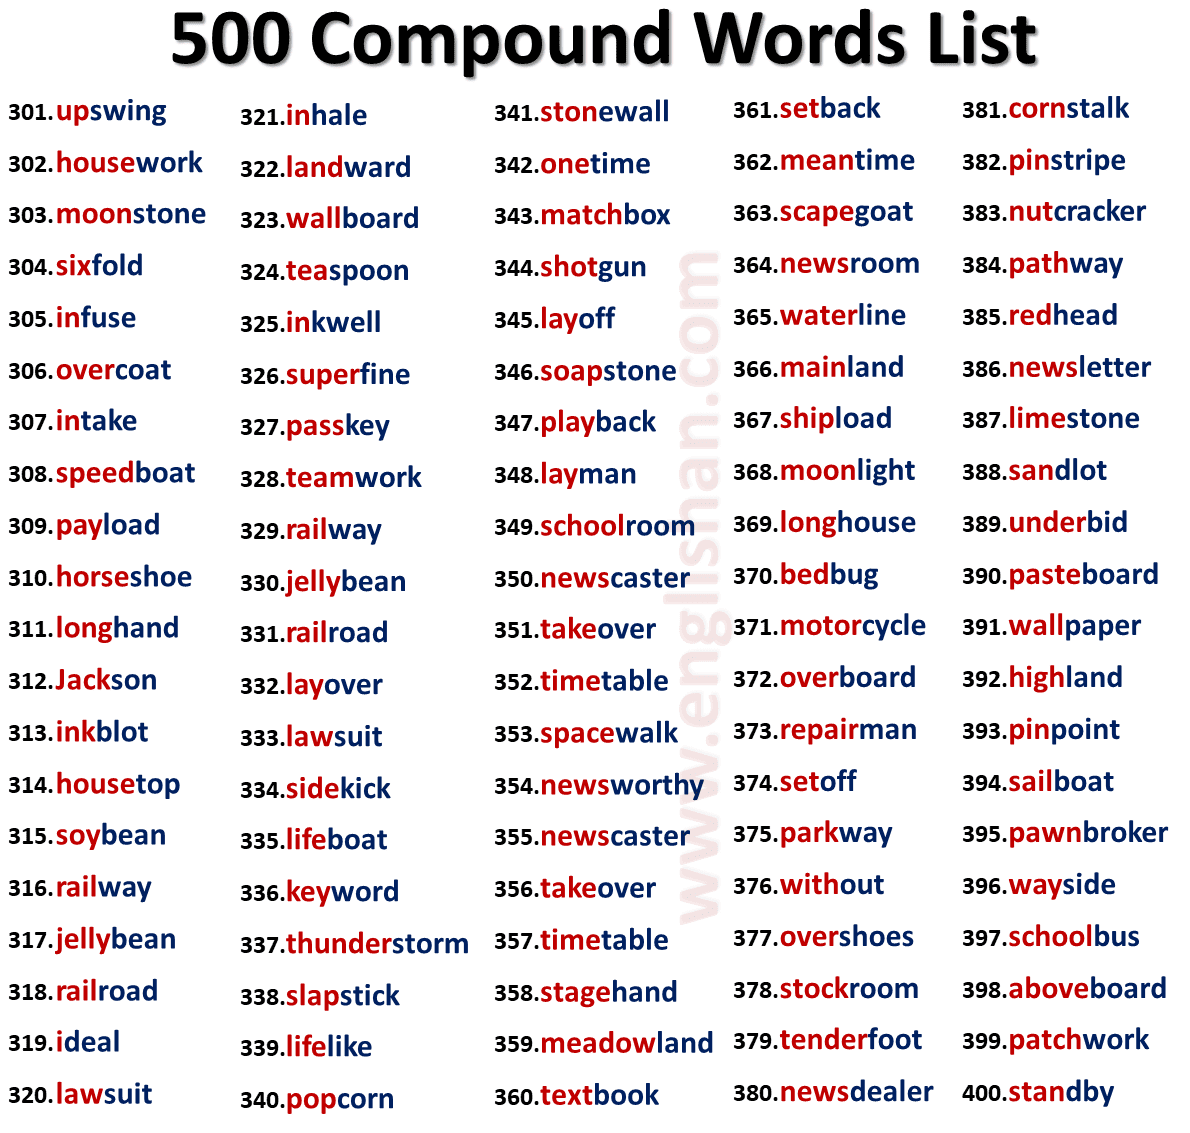 200 Compound Words List